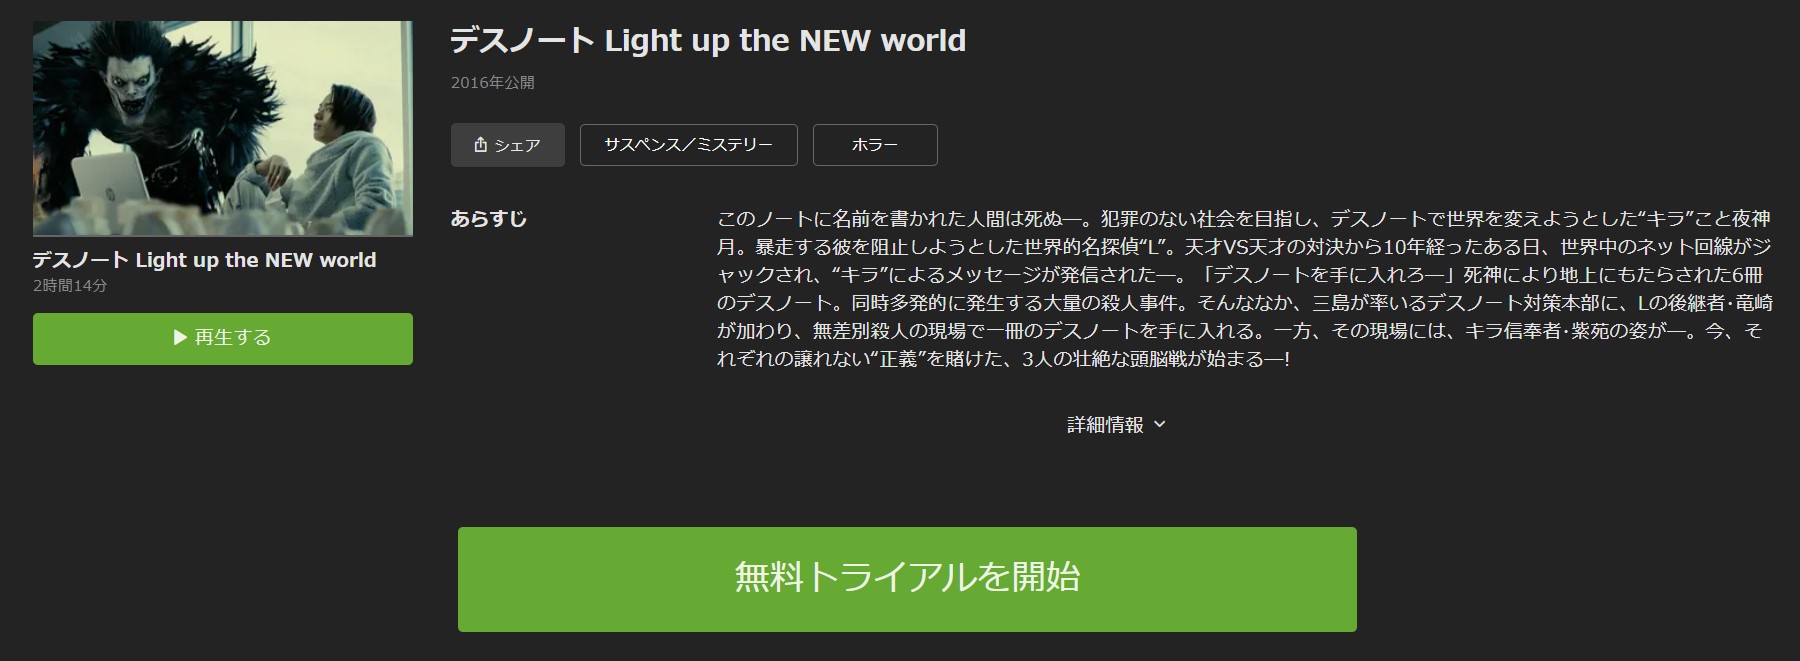 デスノート Light up the NEW world